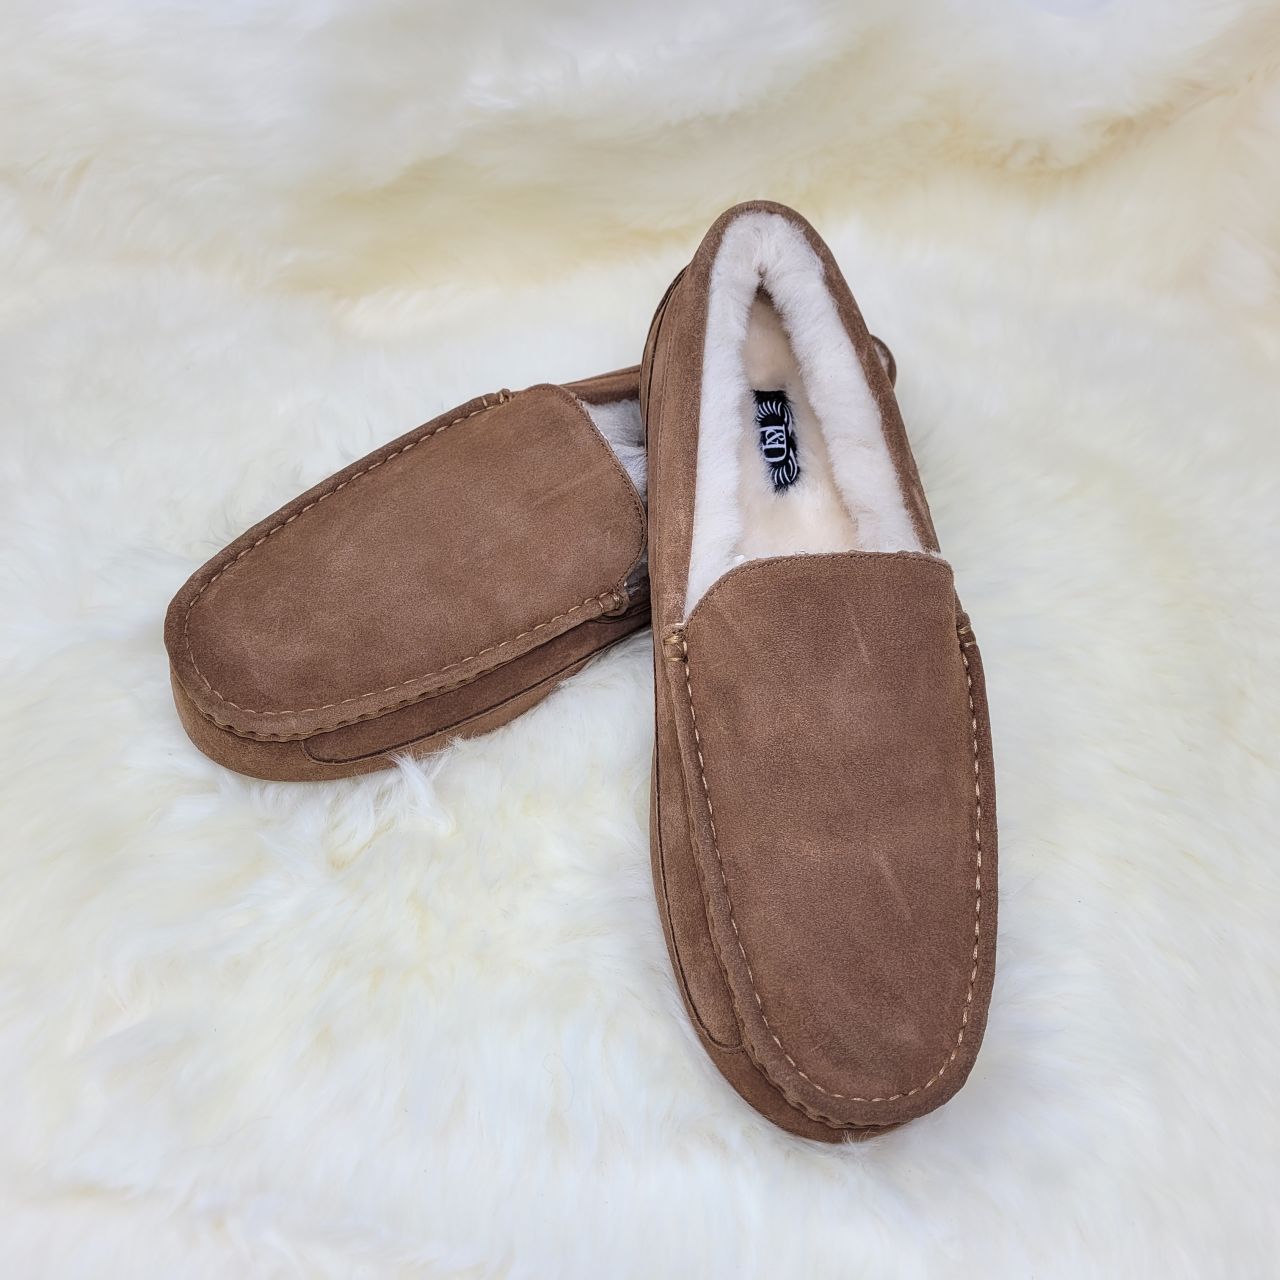 Men's chestnut moccasin slippers sat on a white sheepskin rug